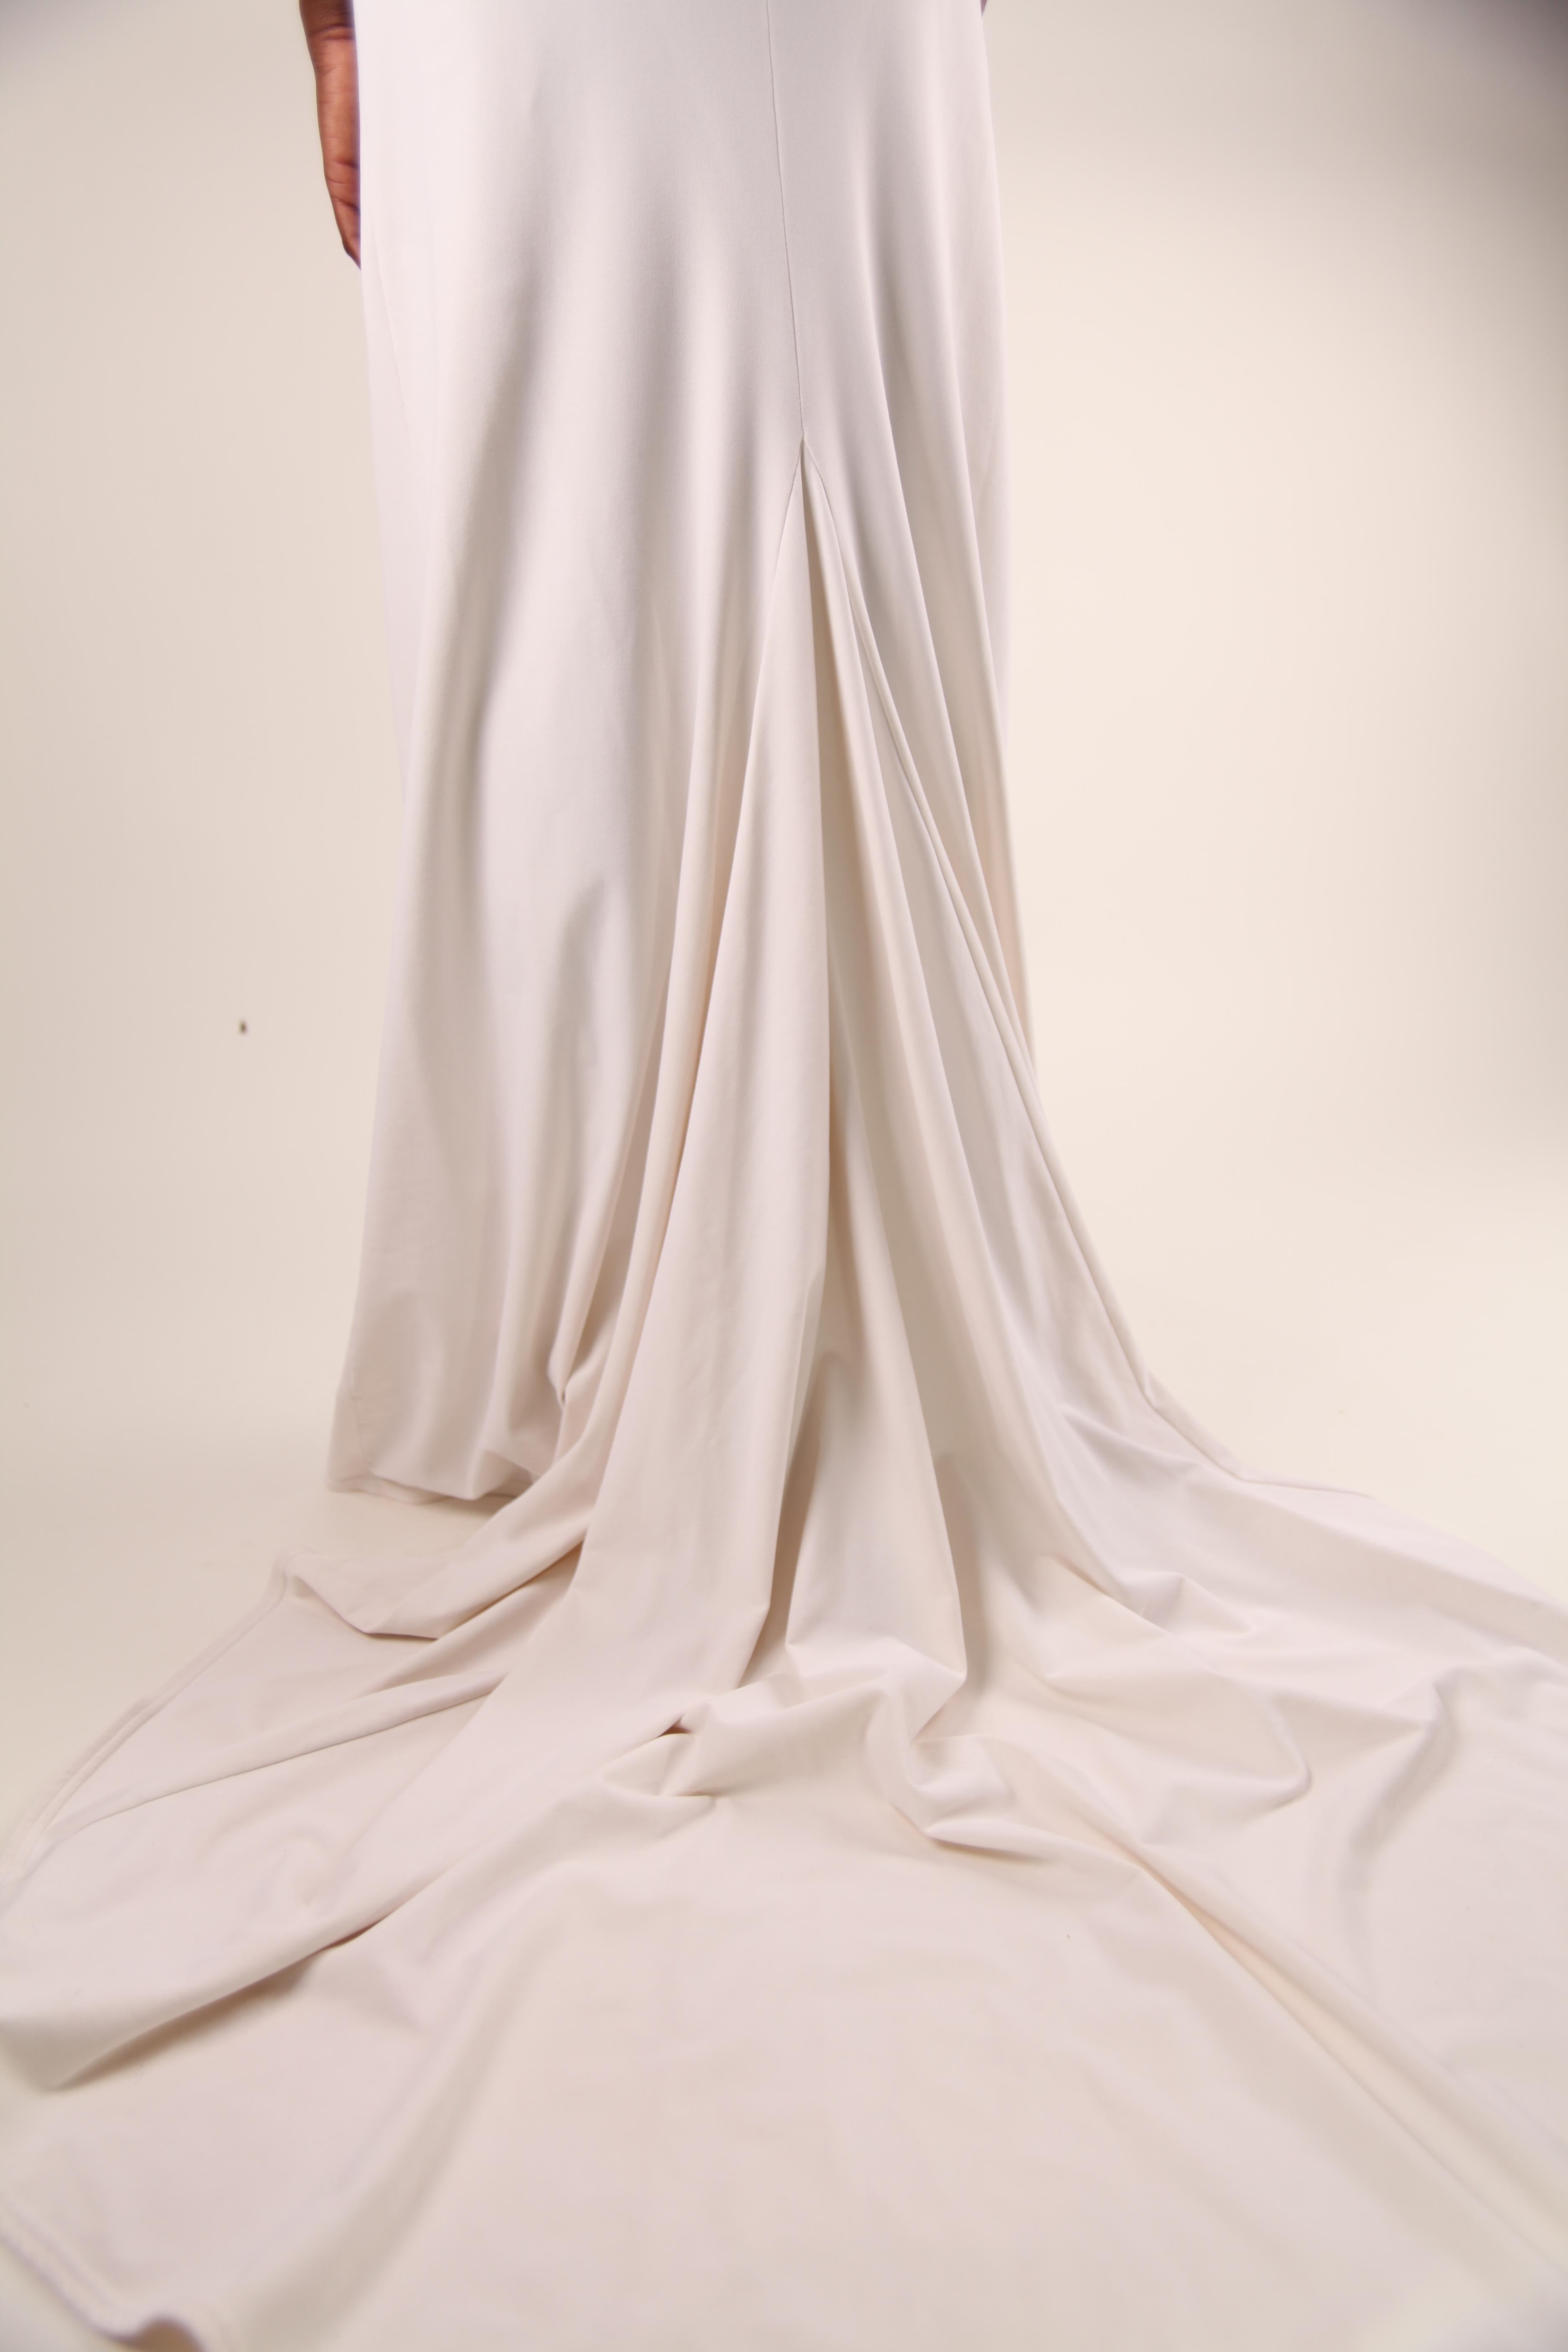 Chantal Thomass, catwalk gown “African Summer” collection, Summer 92/93 4